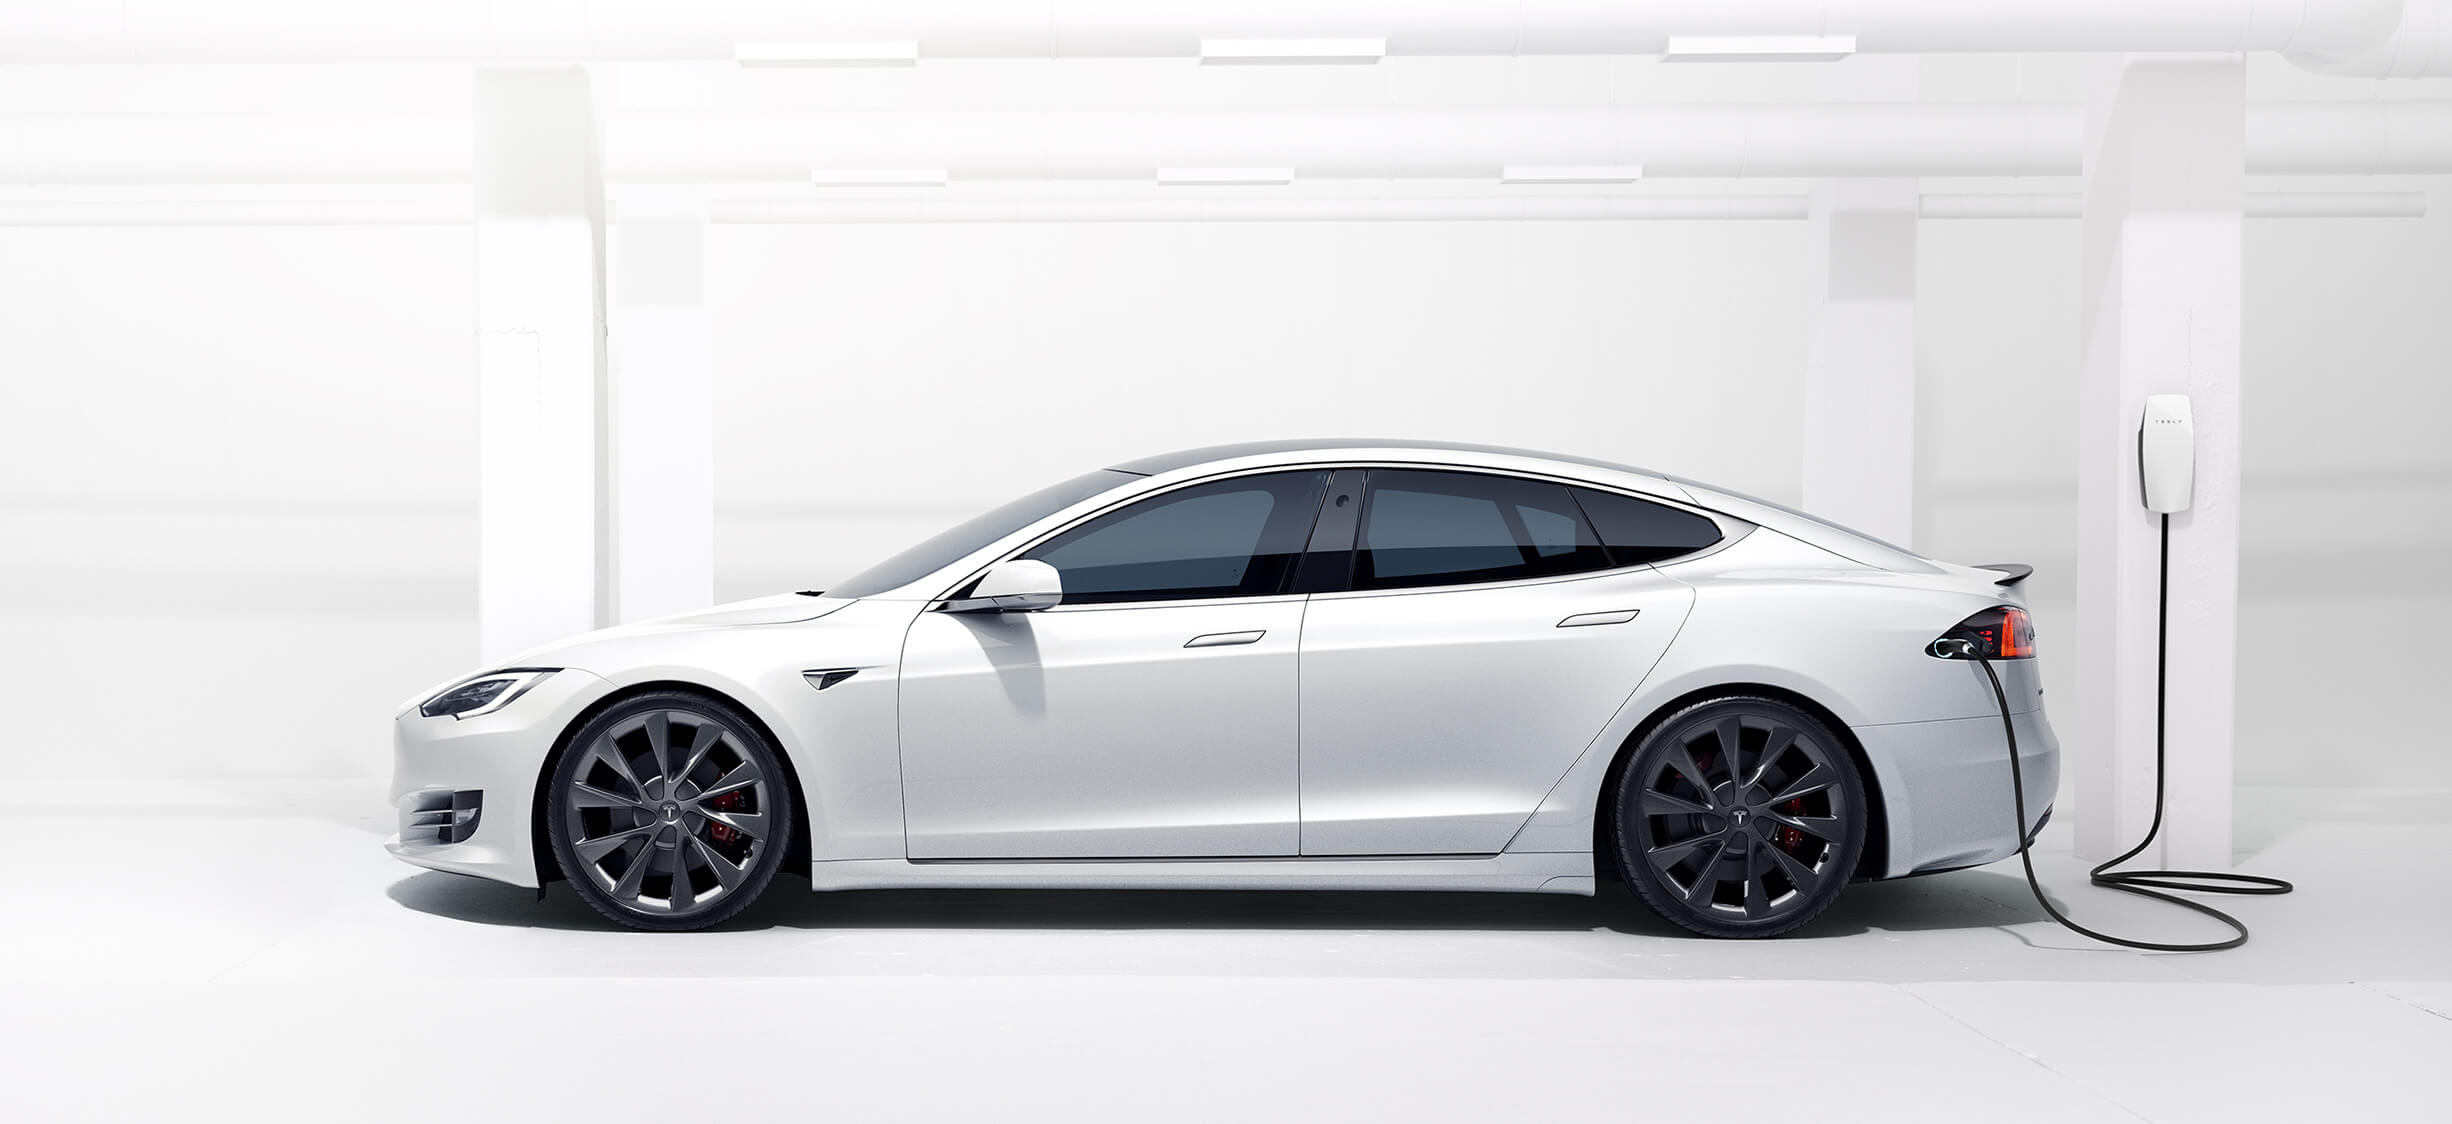 Η Tesla ανακαλεί 475.000 οχήματα Model 3 και Model S